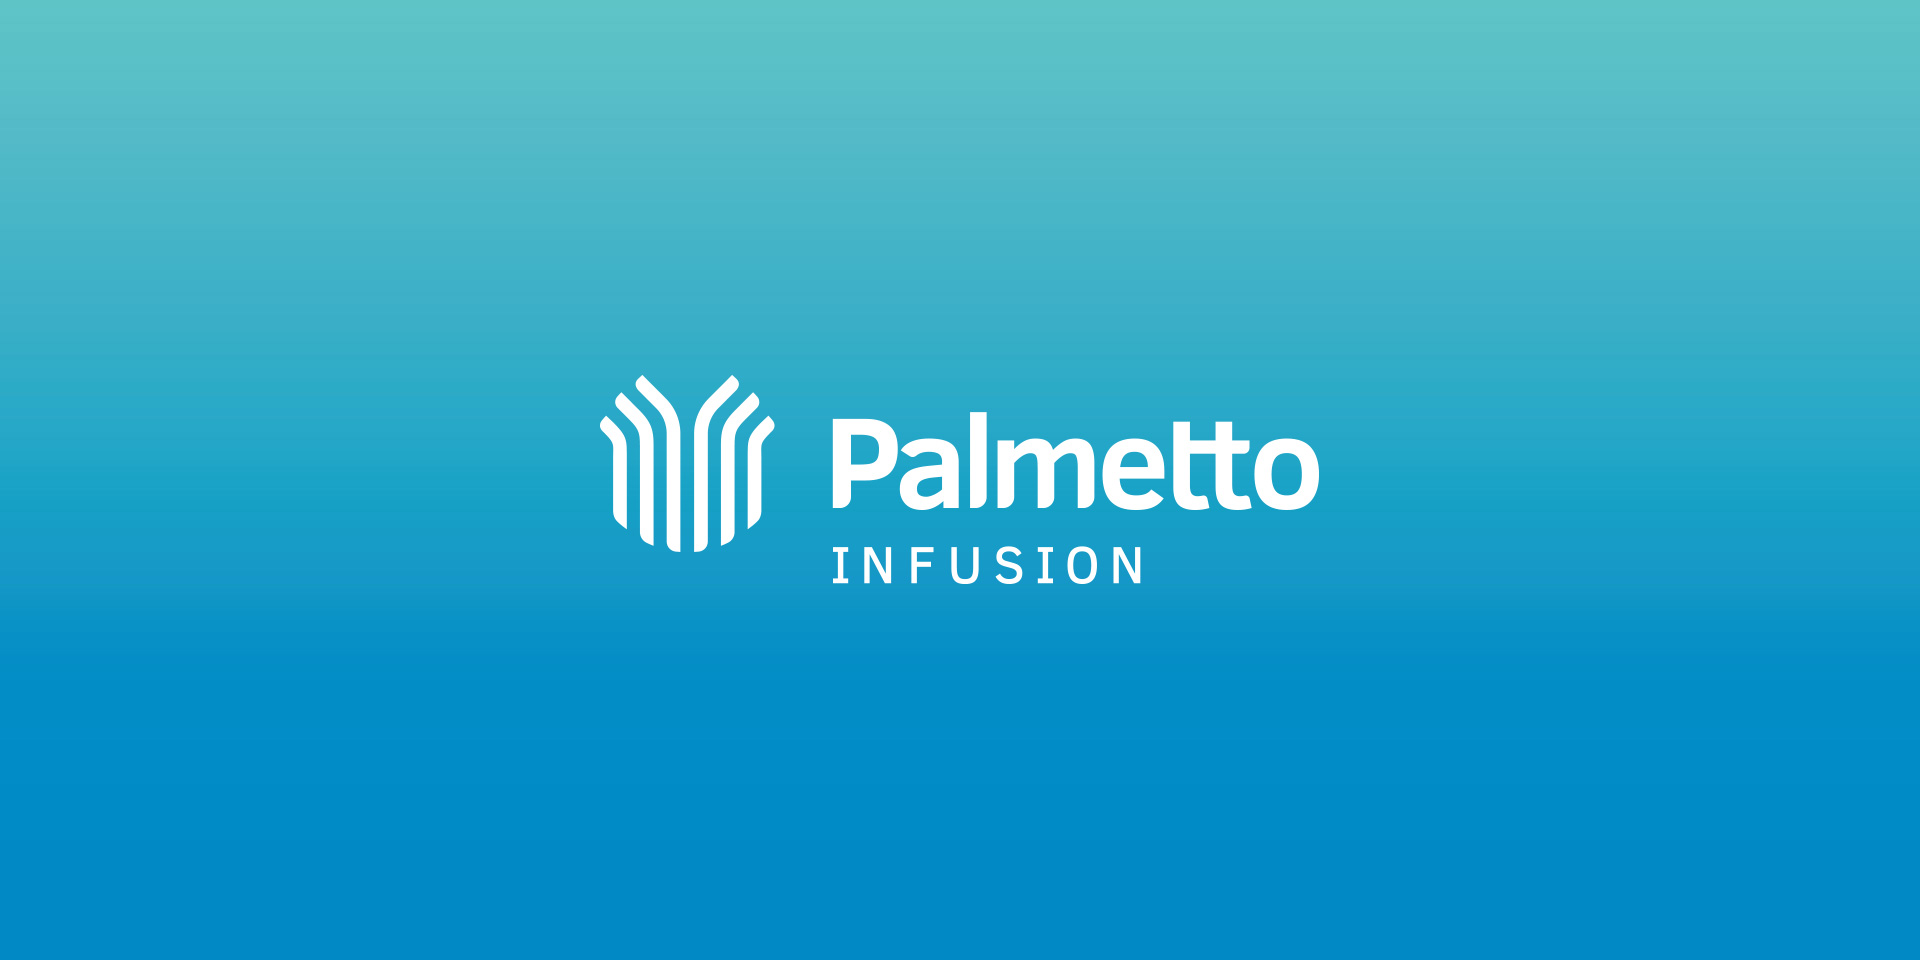 Palmetto Infusion